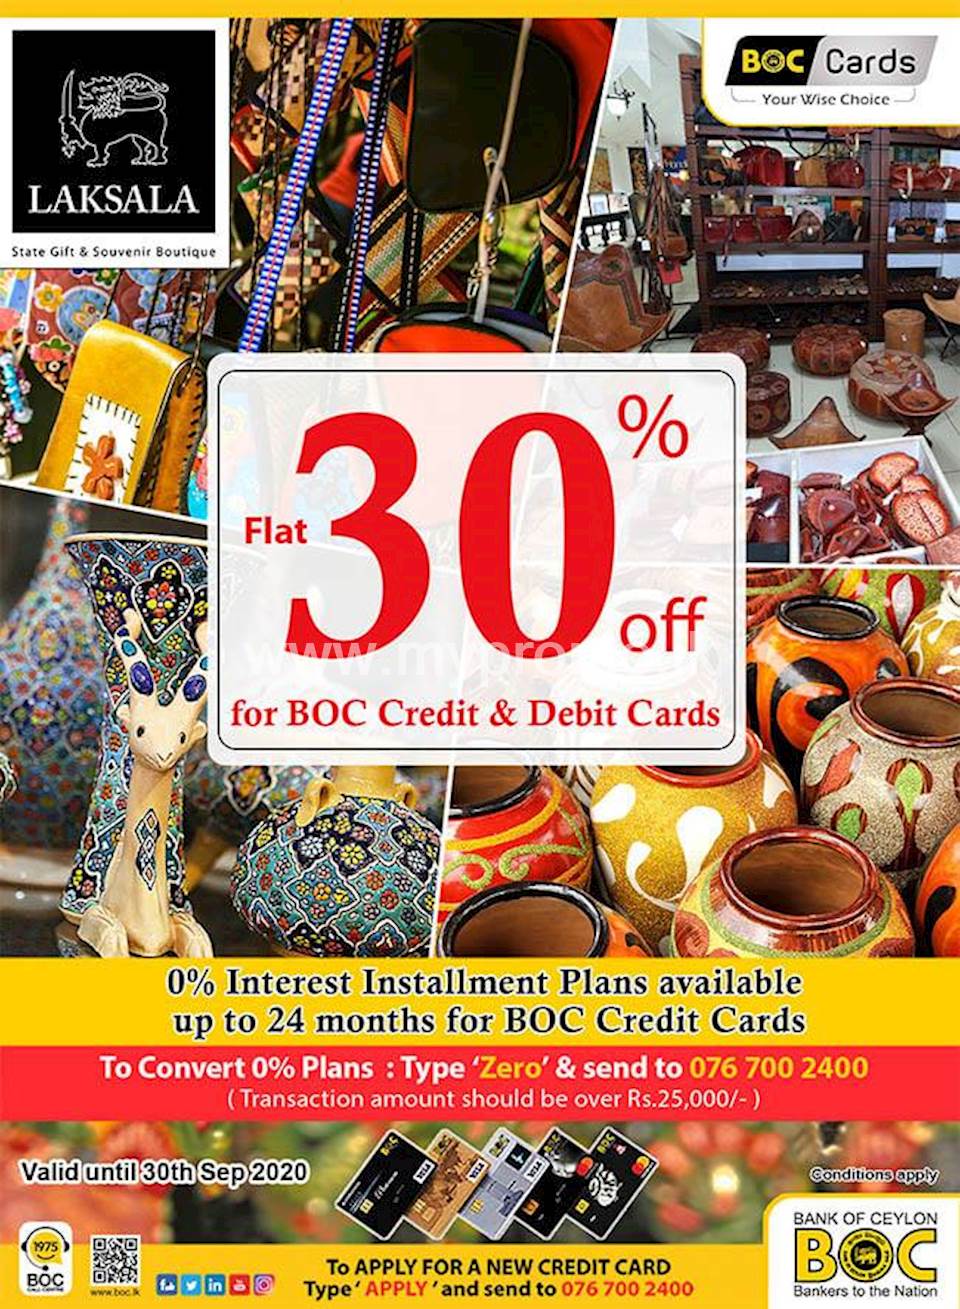 Flat 30% OFF for BOC Credit & Debit Cards at Laksala